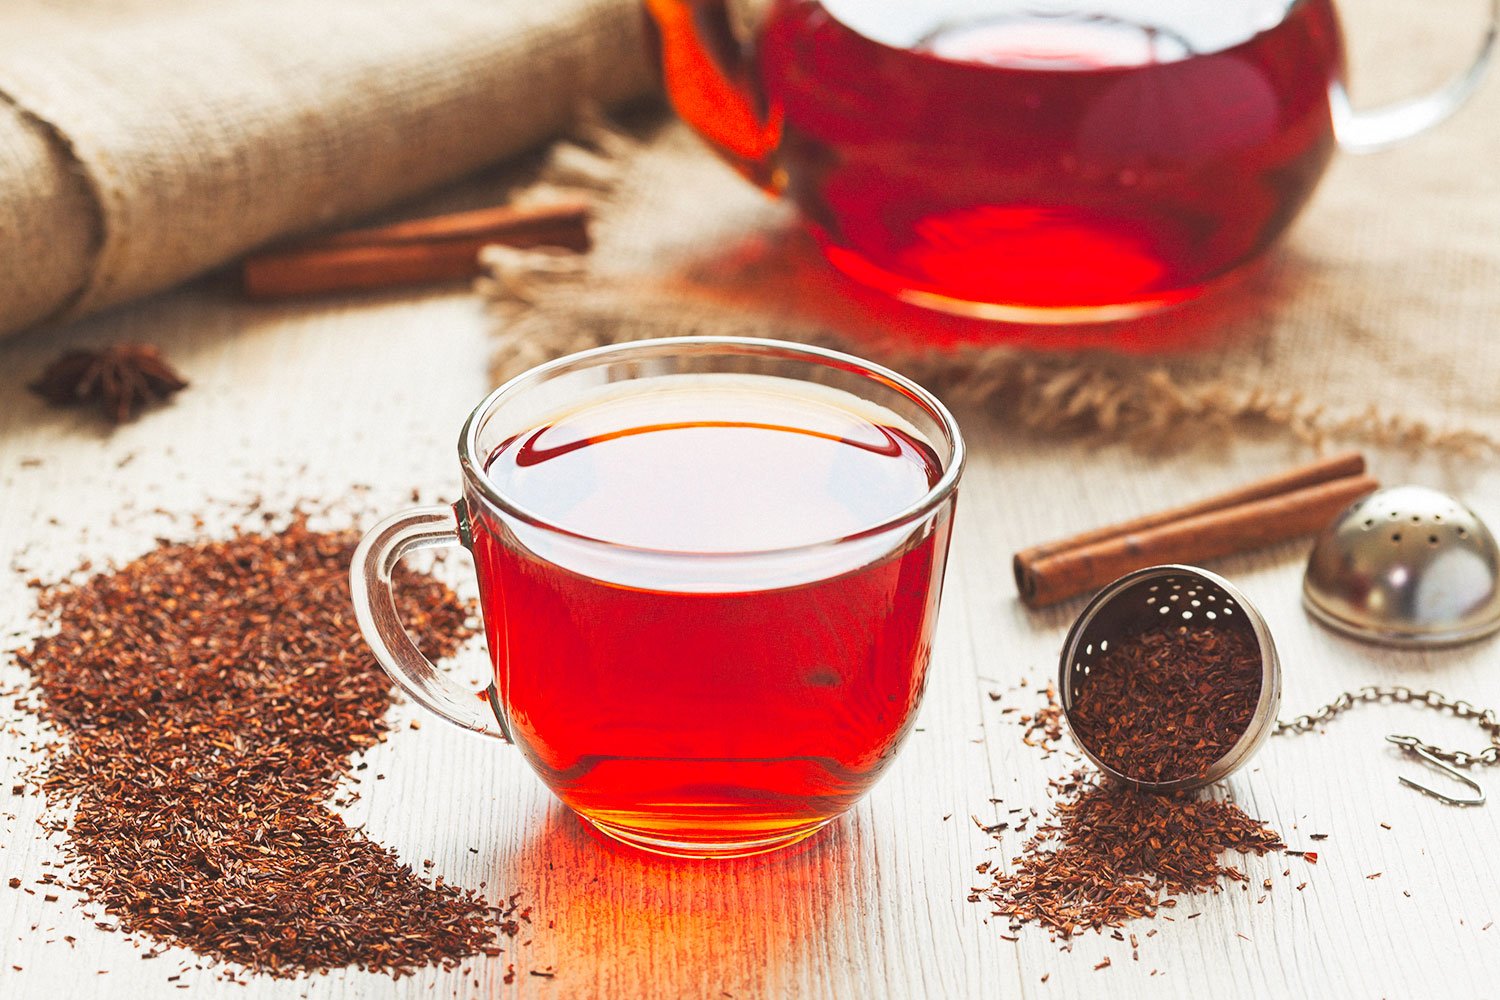 阿萨姆红茶_印度 散装欧标红茶批发 进口红茶 条形茶叶批发 - 阿里巴巴